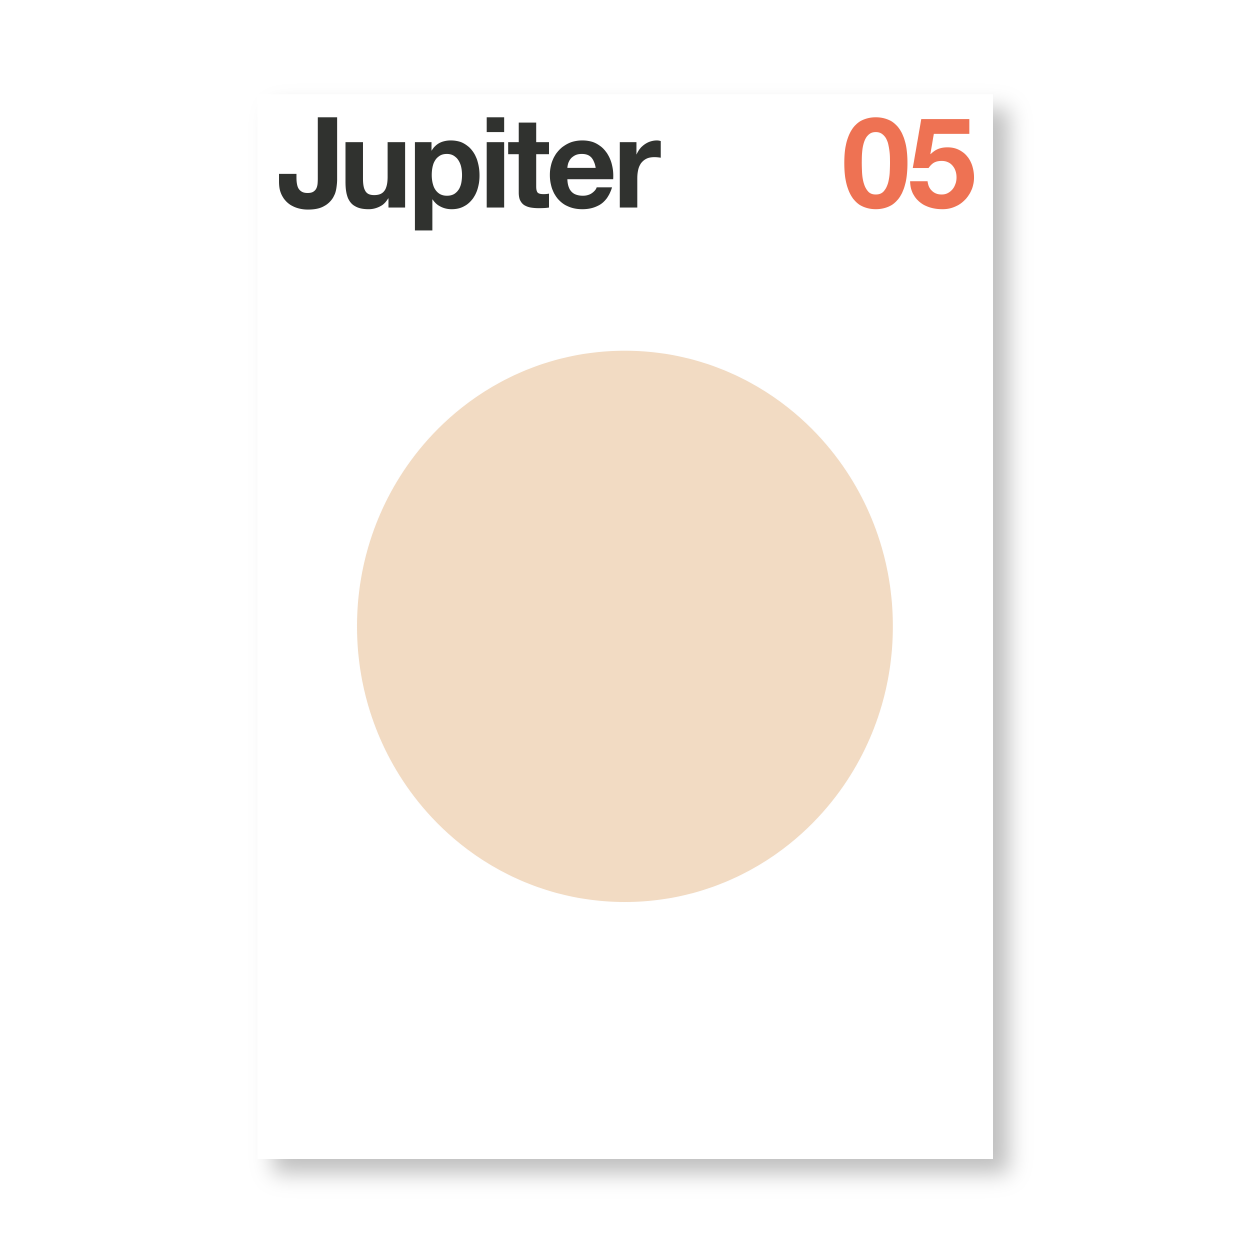 Jupiter V